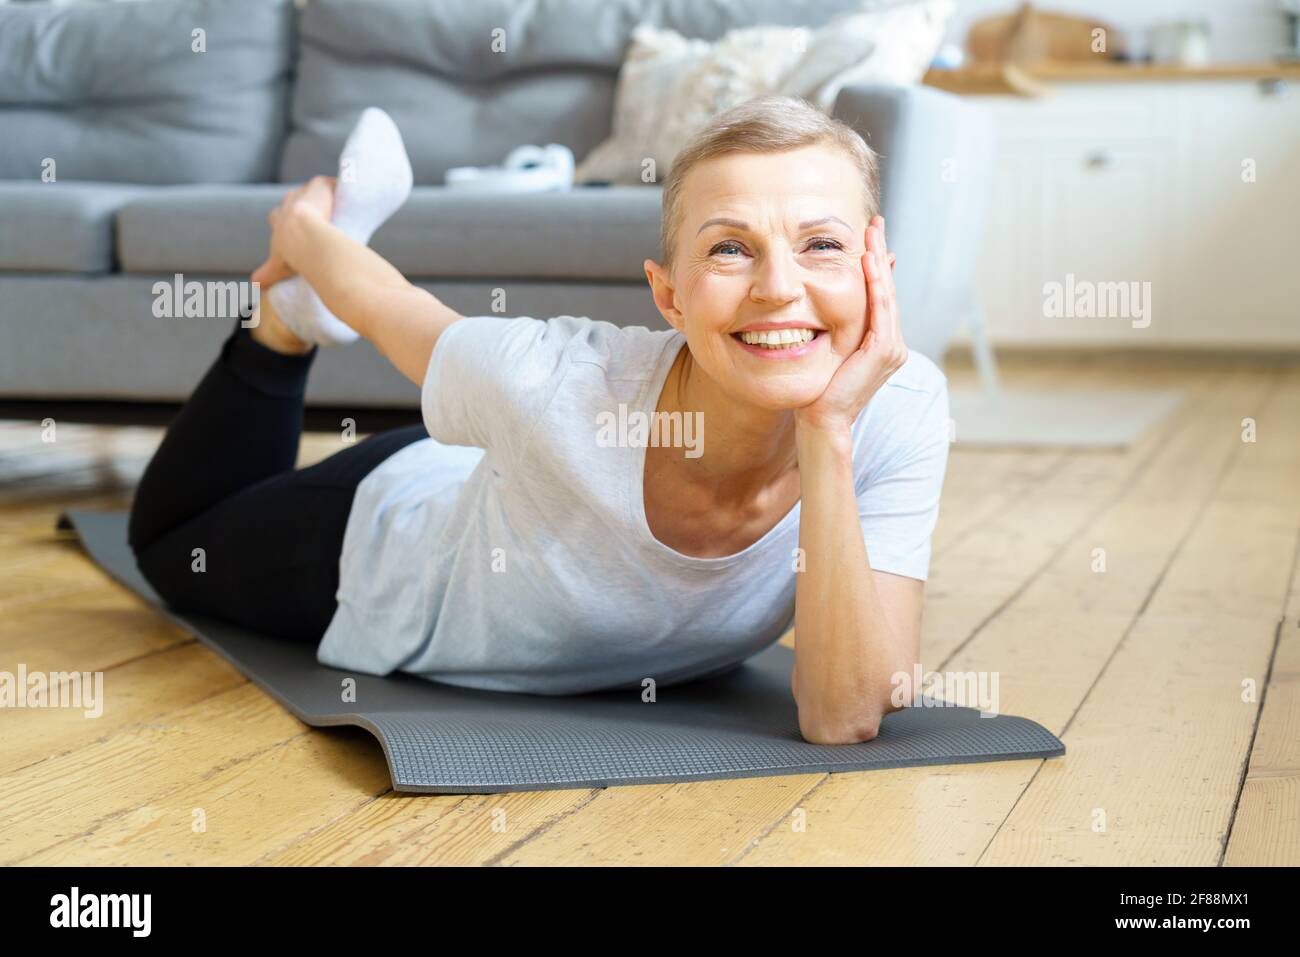 Glückliche lächelnde ältere Frau, die sich streckte und zur Kamera schaute. Bewegung für die körperliche Gesundheit. Wellness für Frauen im Ruhestand. Inländische Yoga-Praxis der flexiblen reifen Frau Ausübung auf Sportmatte Stockfoto